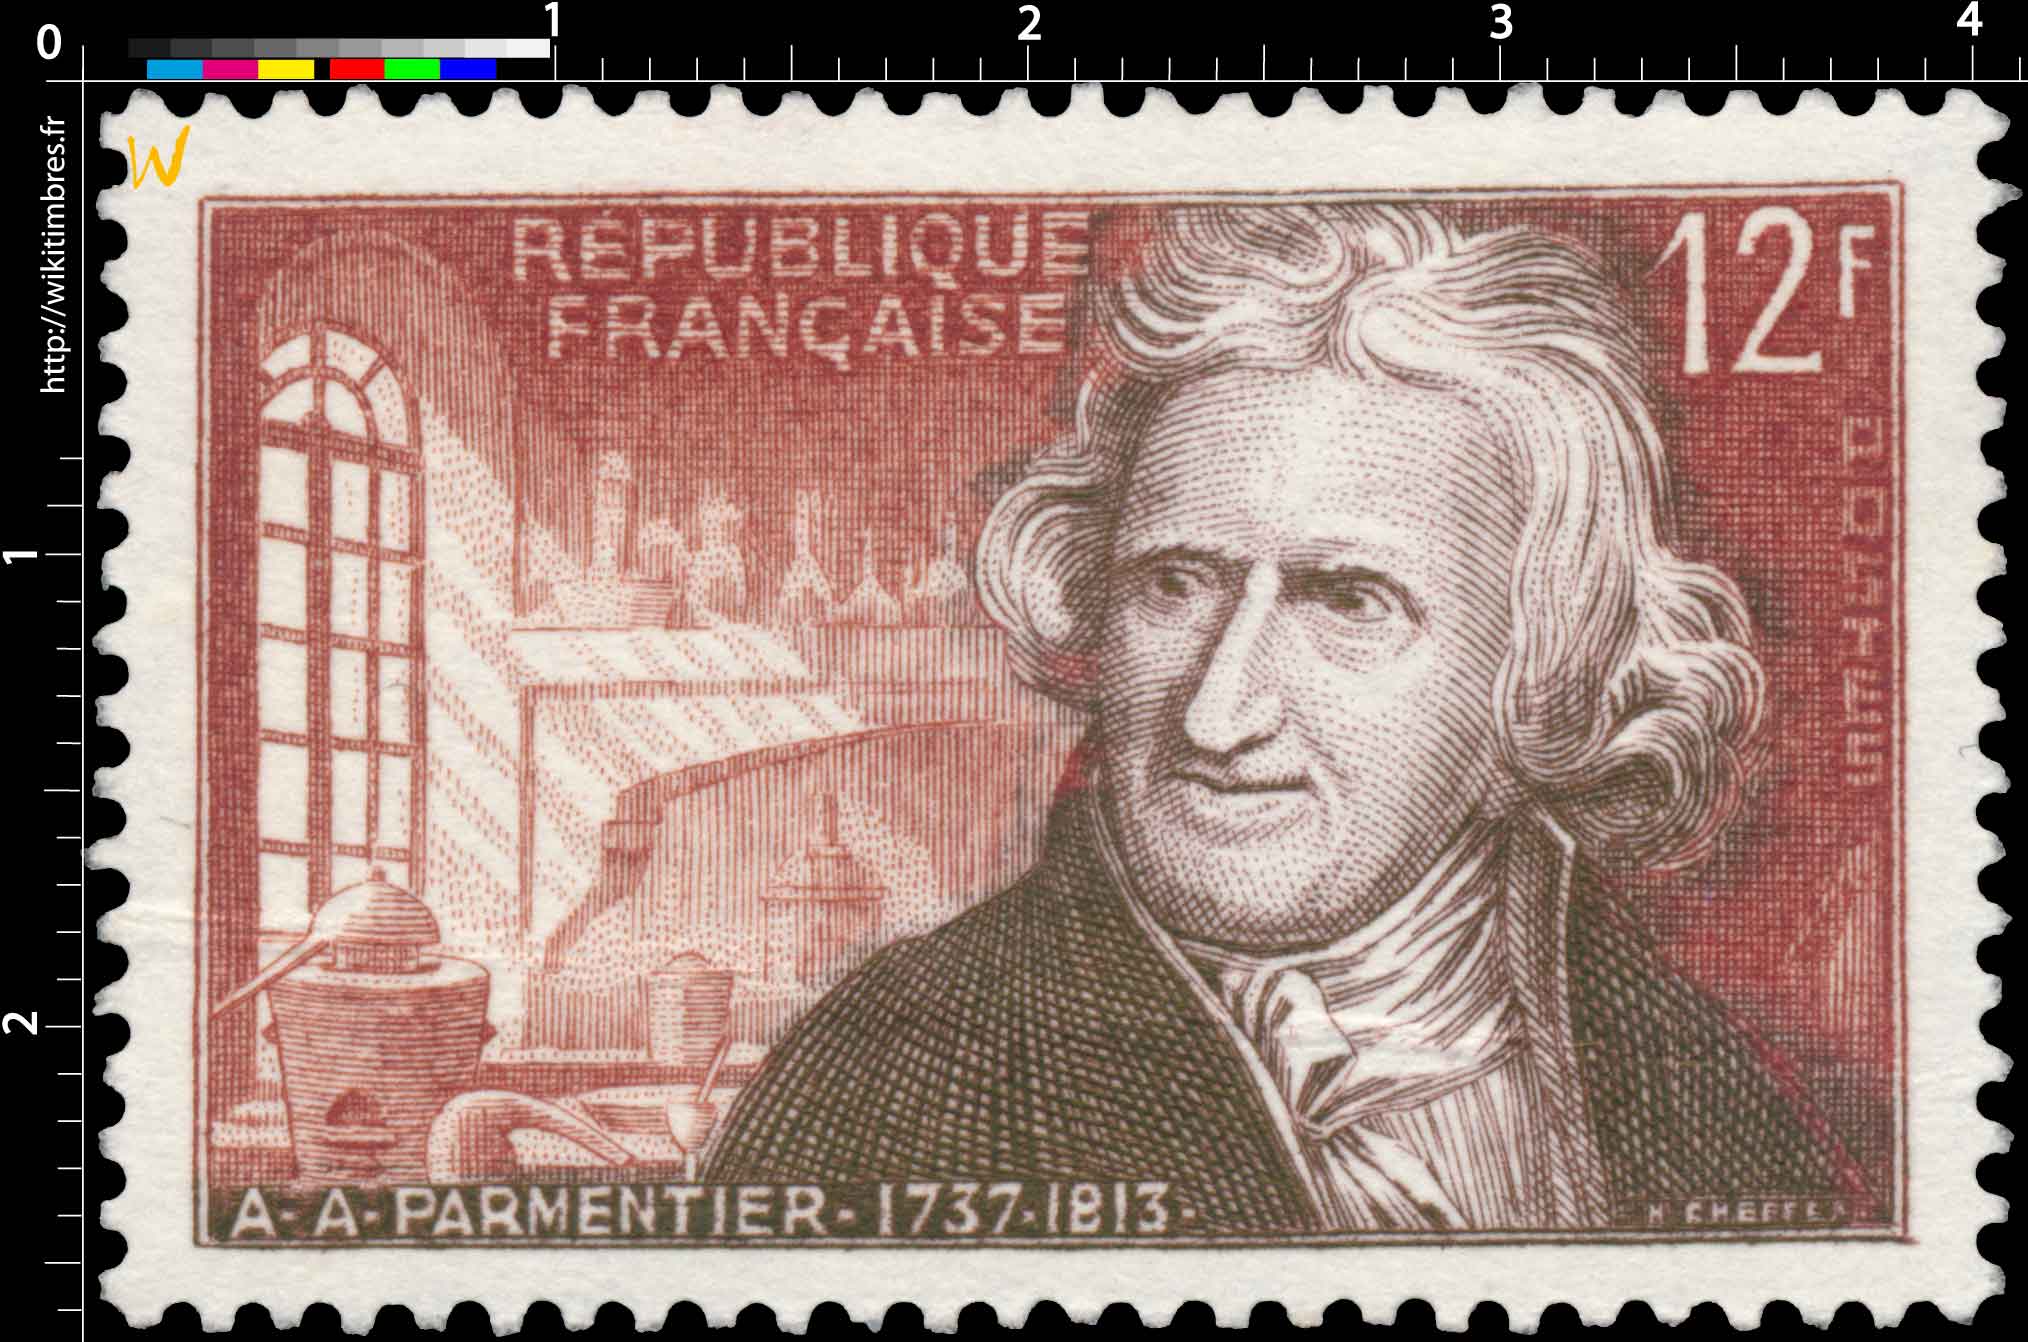 A.A. PARMENTIER 1737-1813